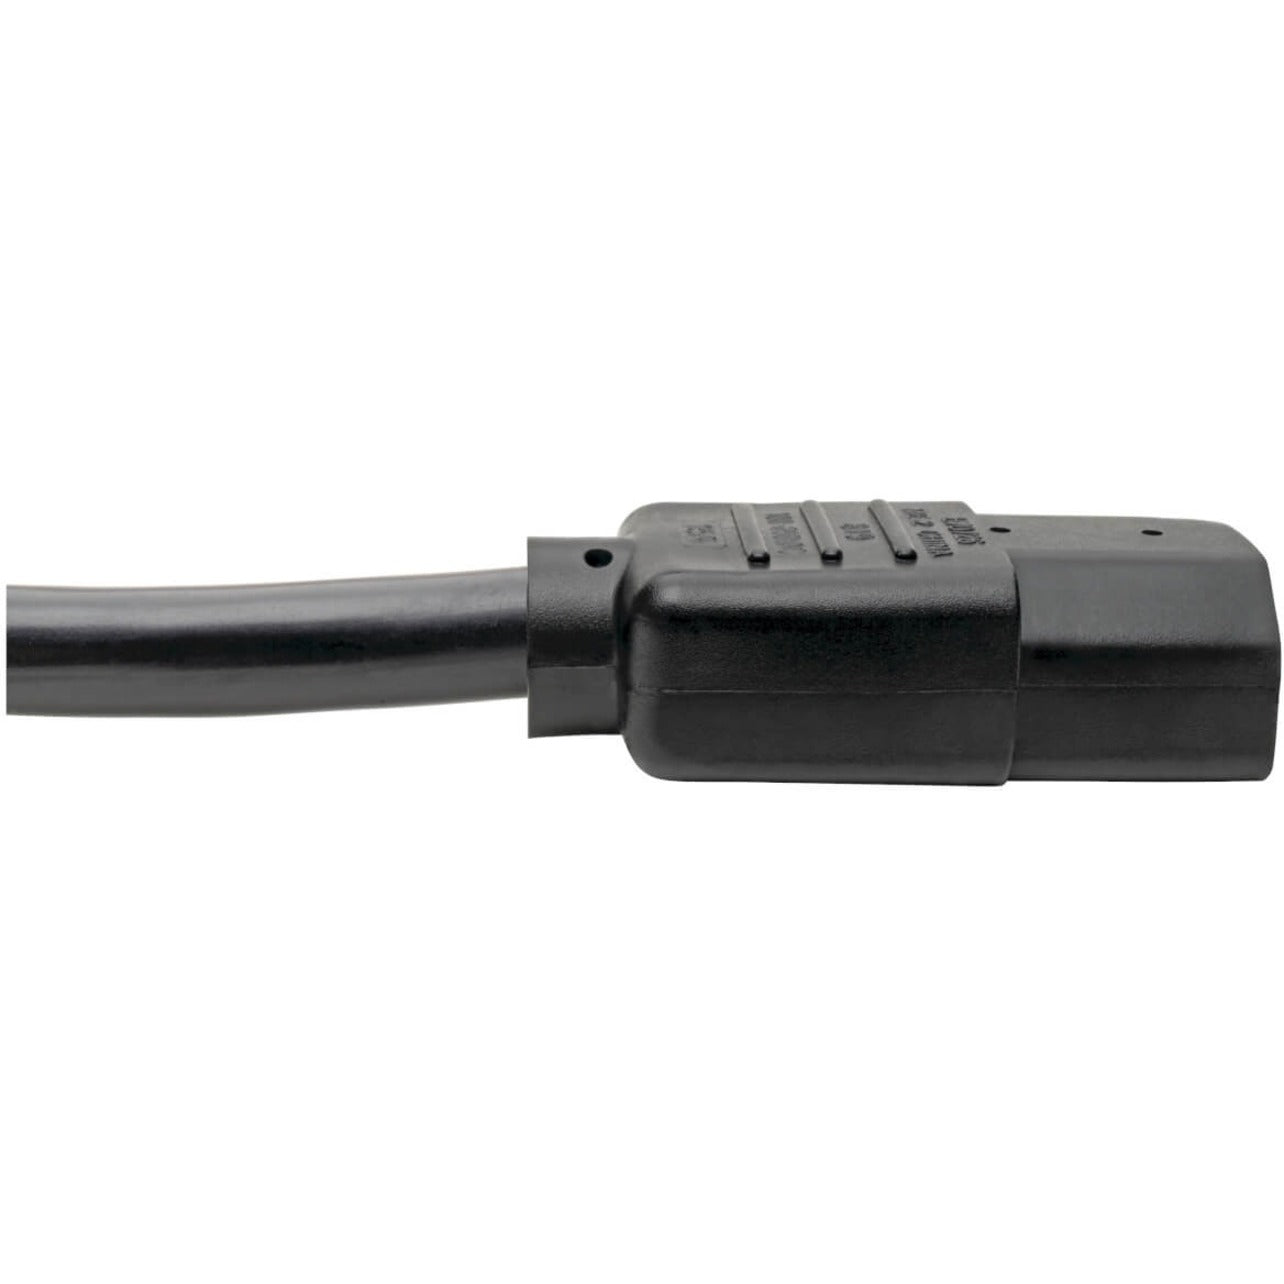 Tripp Lite P007-006 Standard Power Cord 6 ft 15A 220V AC NEMA 5-15P to IEC 60320 C13